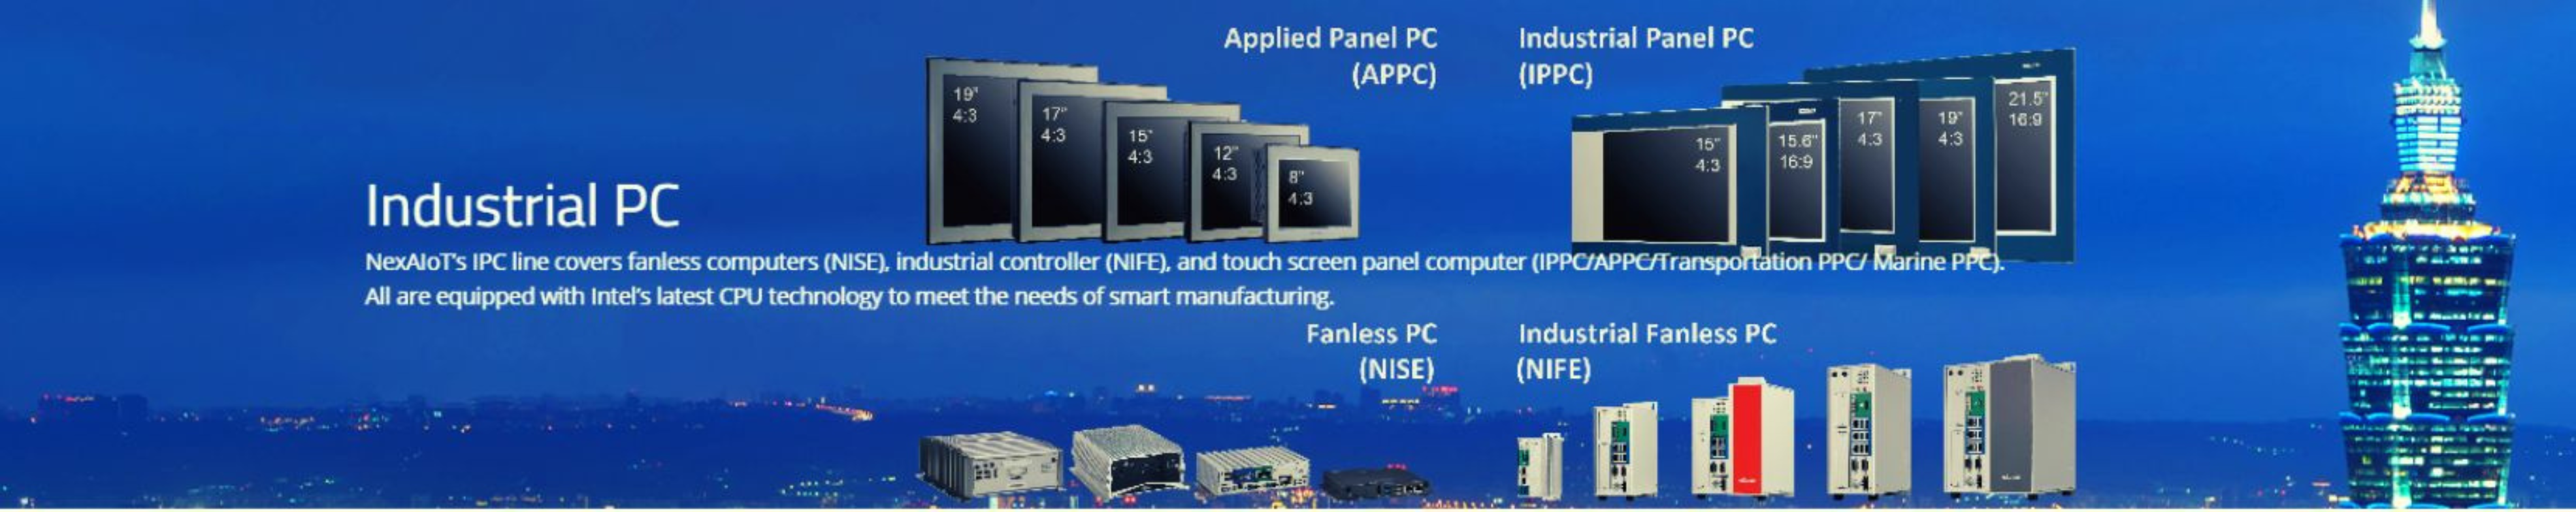 IPC, Gateway, Màn hình công nghiệp, Panel PC chuyên dụng cho các ngành công nghiệp